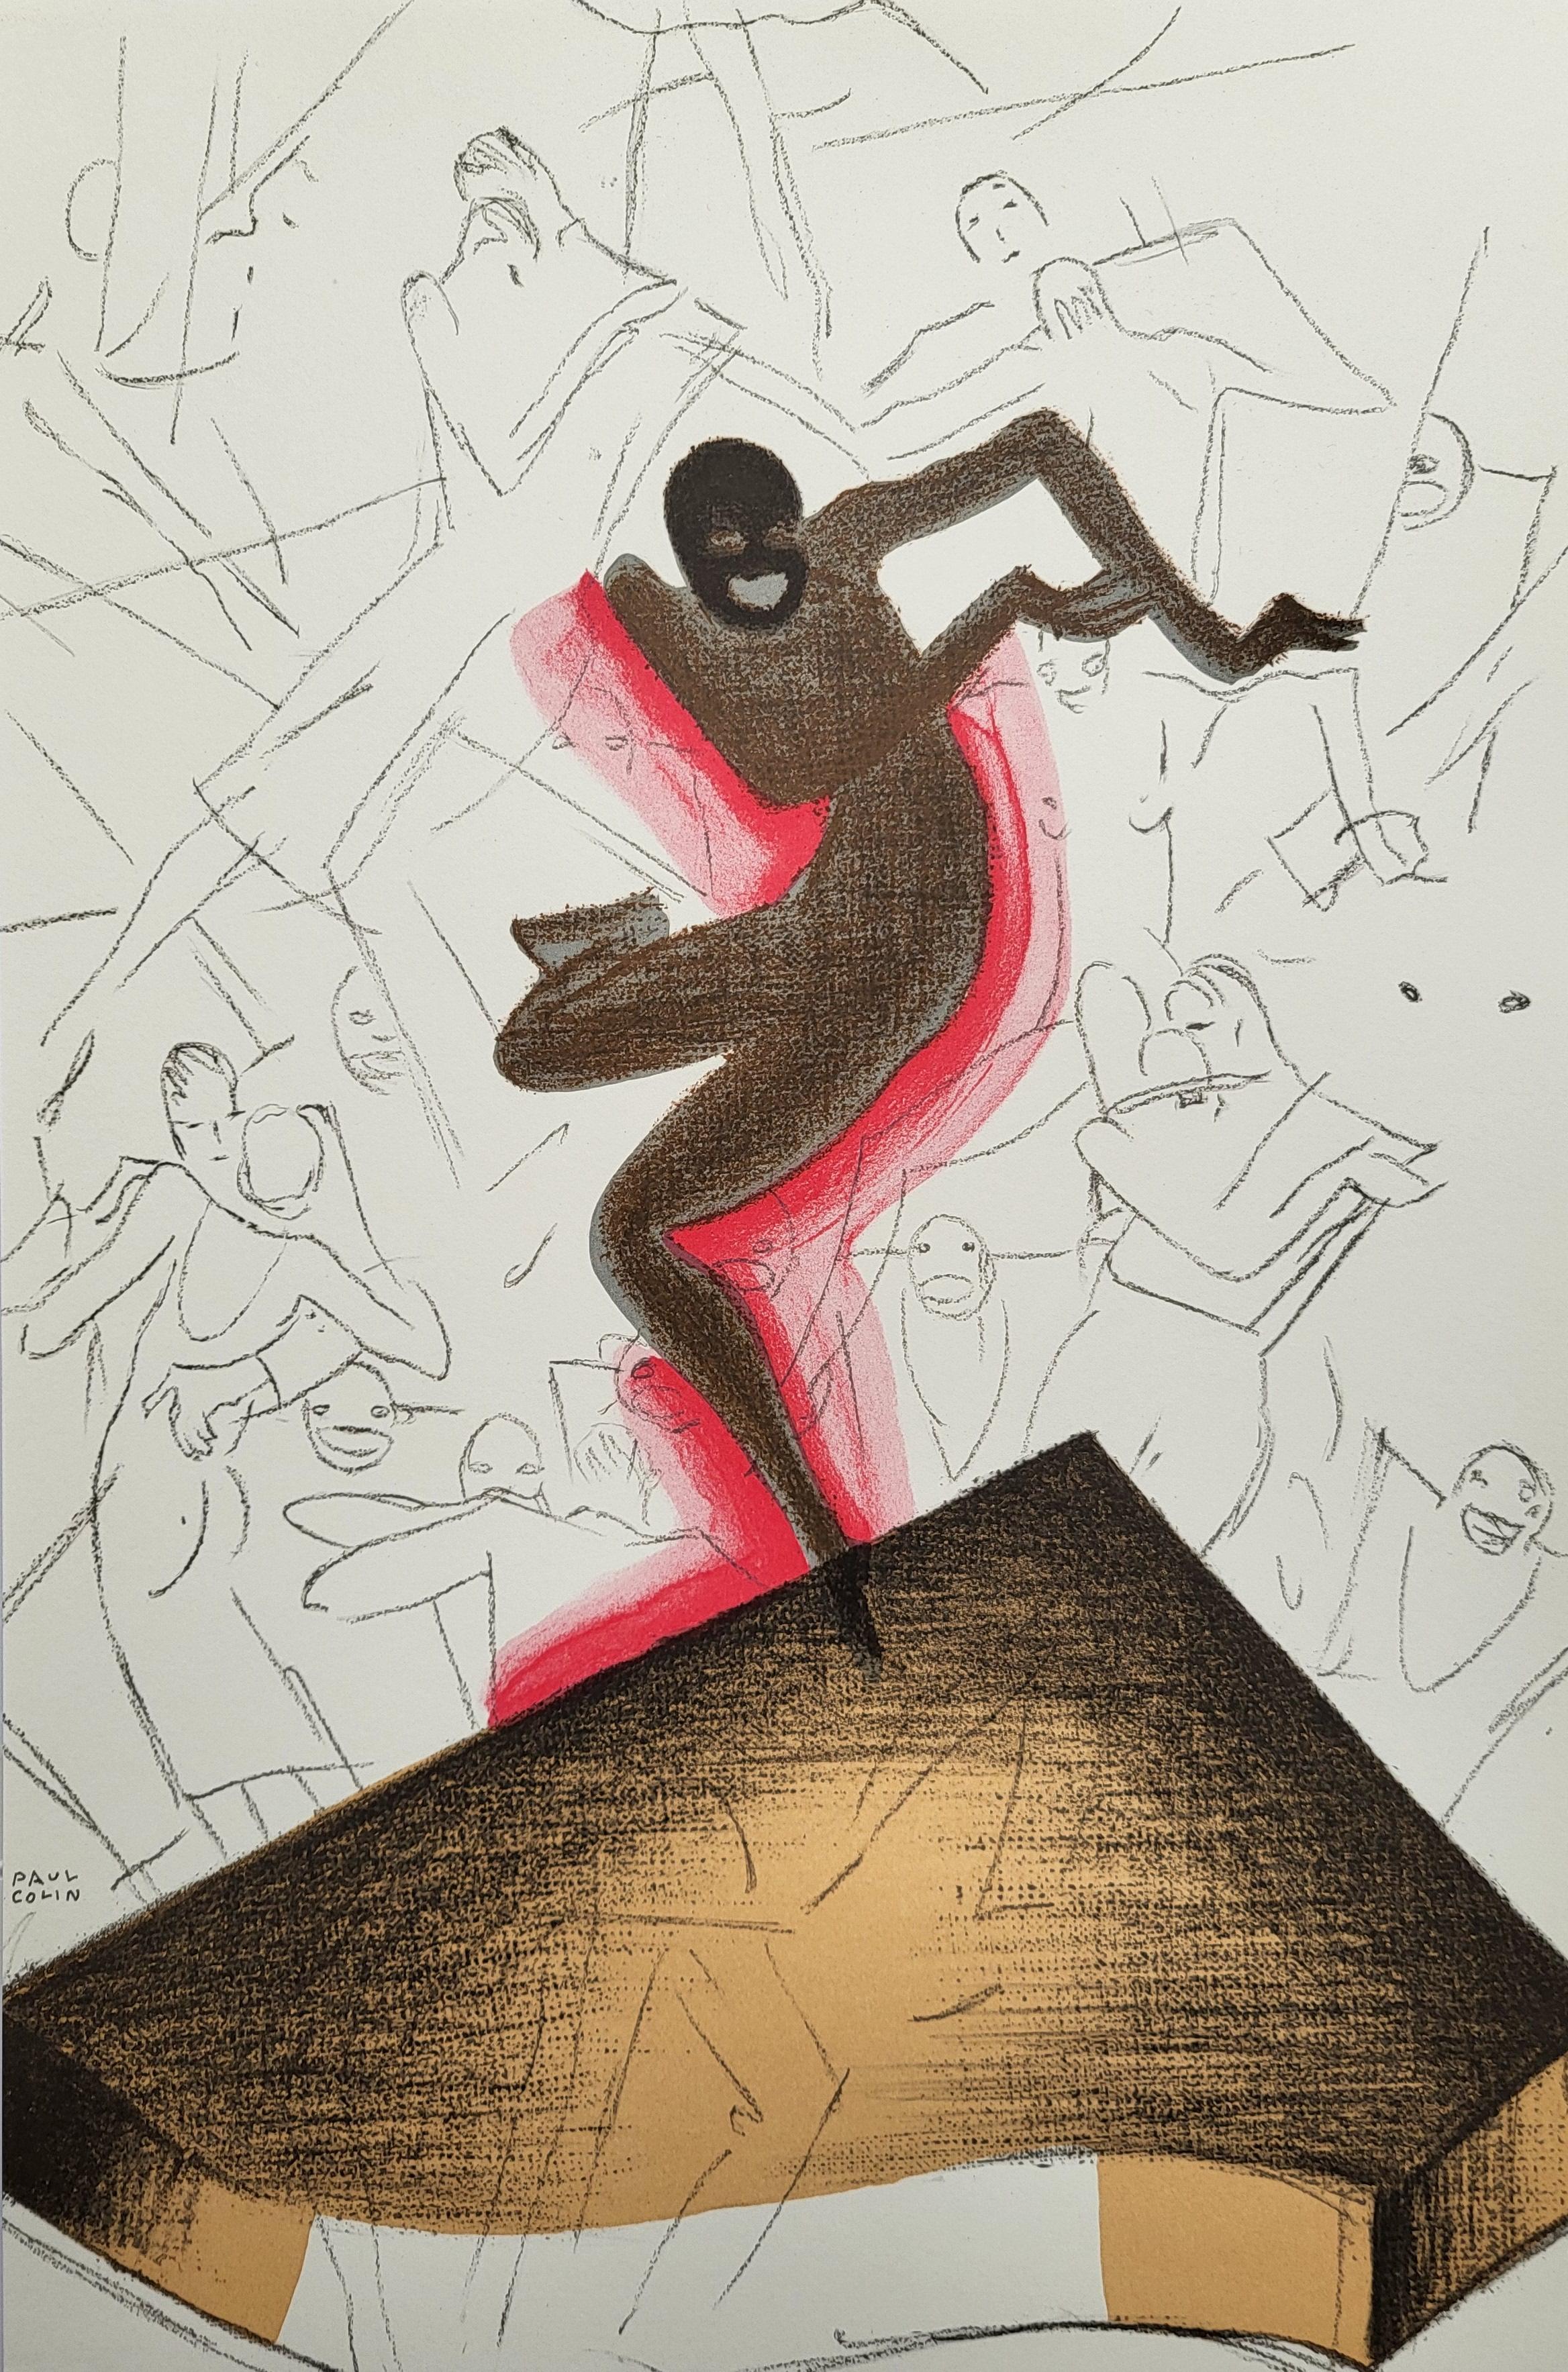 PAUL COLIN Artiste affichiste

1892 - 1985

Lorsque la jeune danseuse de music-hall afro-américaine Joséphine
Baker et le dessinateur d'affiches Paul Colin se sont rencontrés lors des répétitions de la
répétitions de la Revue Nègre à Paris en 1925,